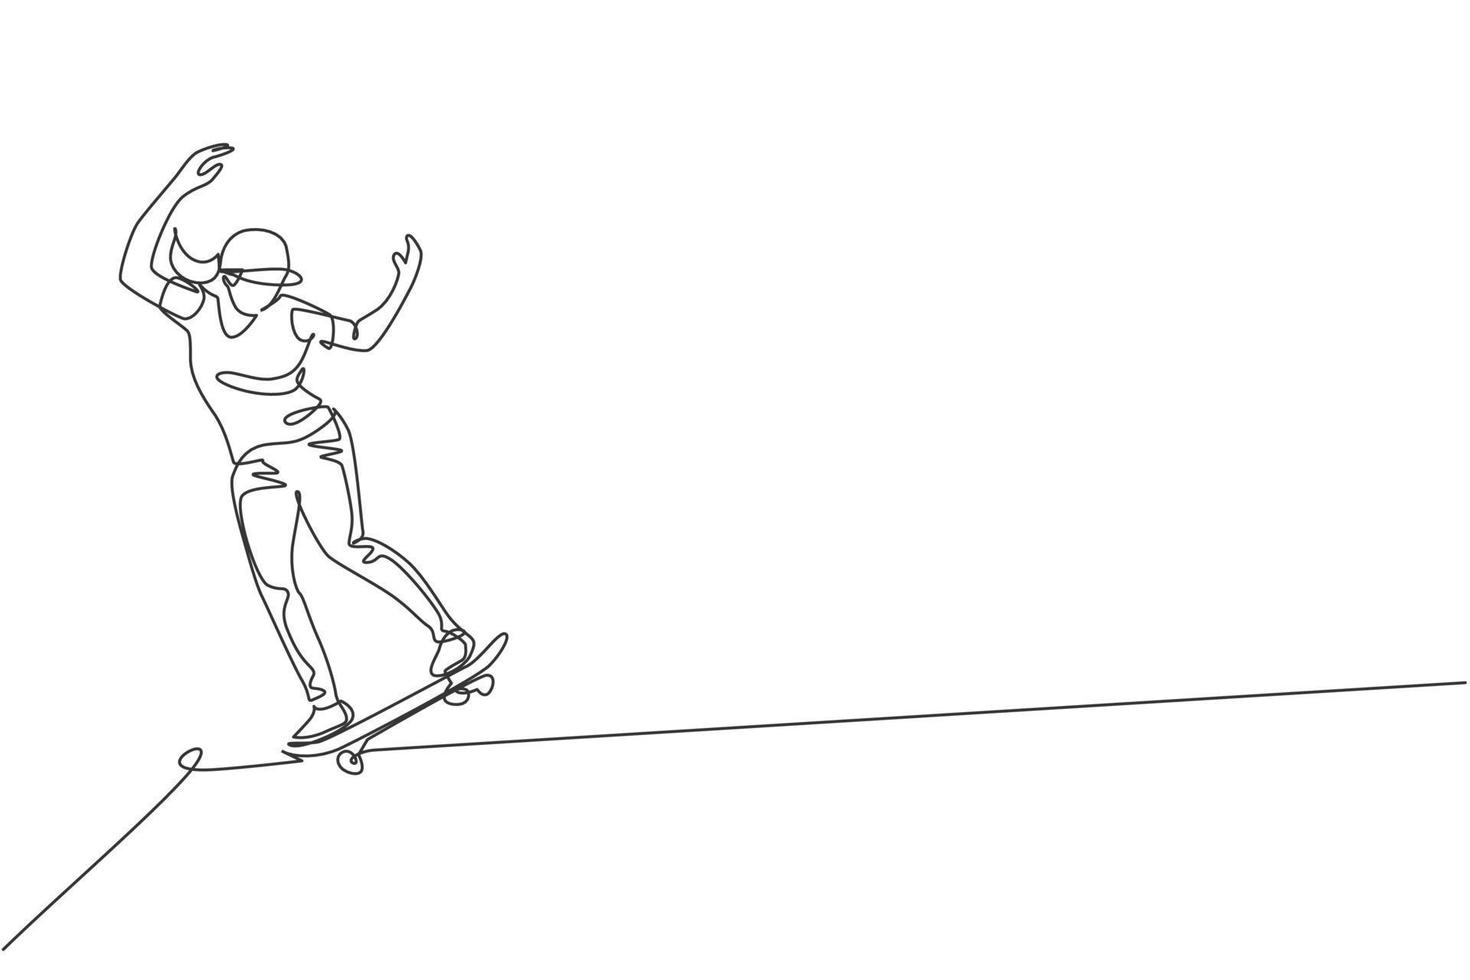 een doorlopende lijntekening jonge coole skateboarder man rijden skateboard doet een glijbaan truc in skatepark. extreme tiener sport concept. dynamische enkele lijn tekenen ontwerp vector grafische afbeelding